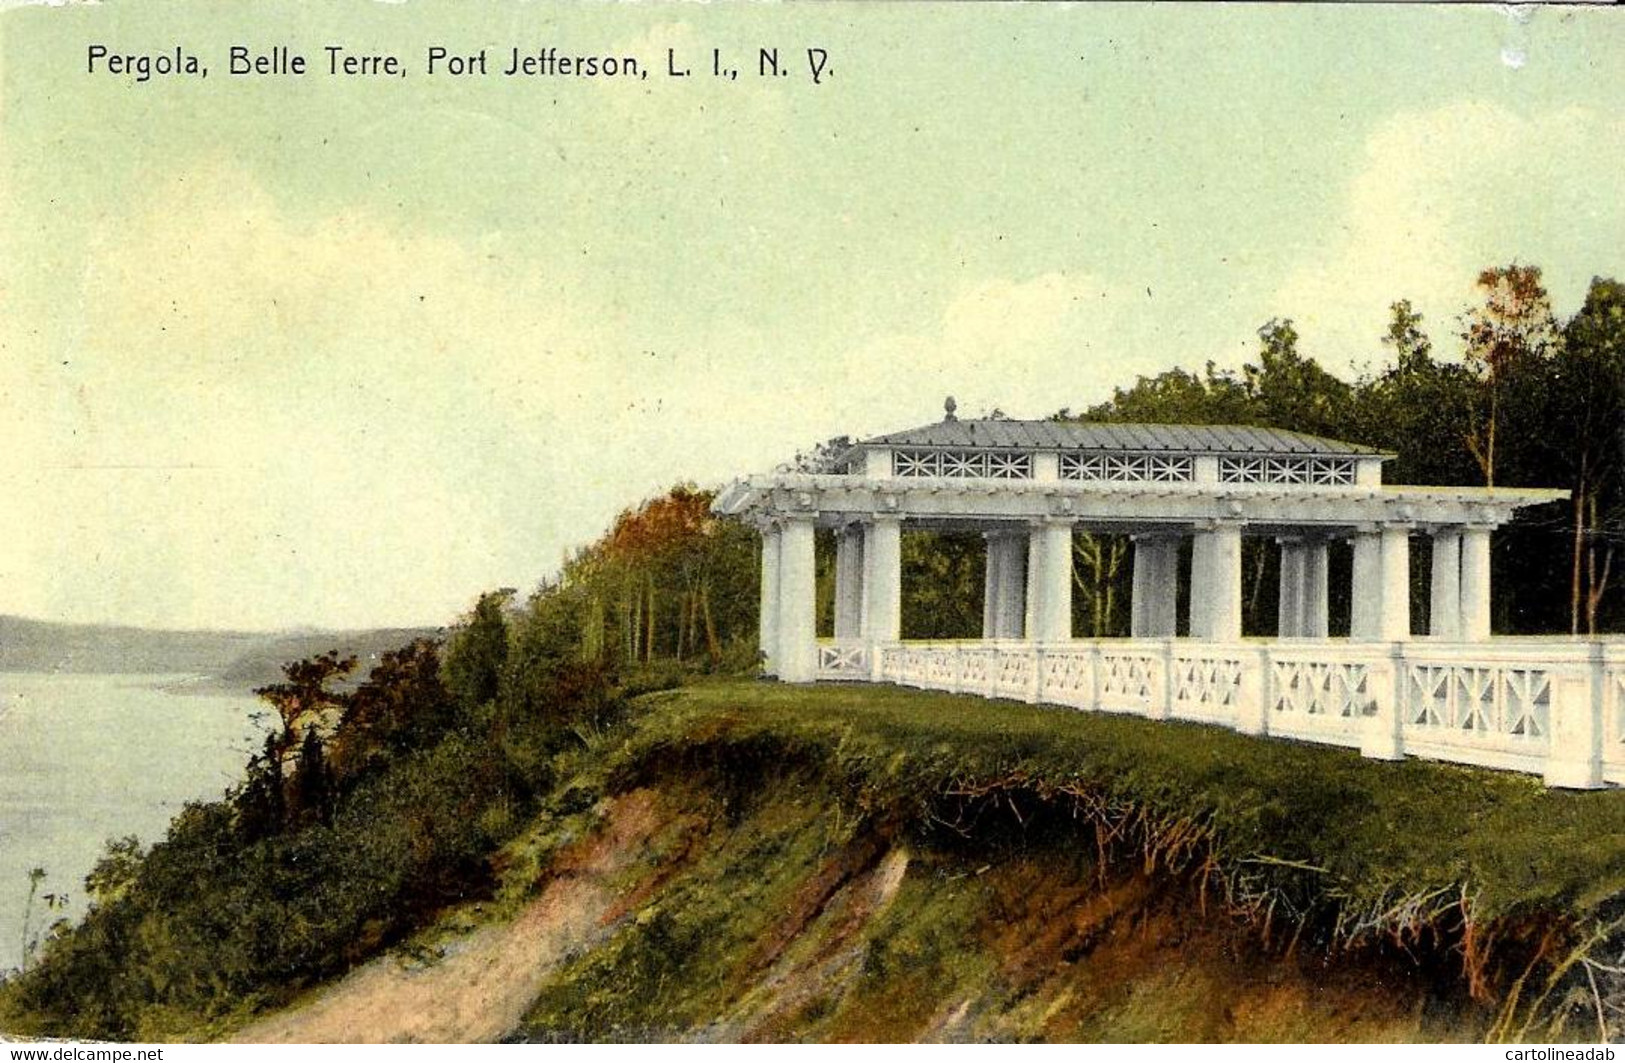 [DC12535] CPA - PORT JEFFERSON - PERGOLA - BELLE TERRE - Viaggiata 1910 - Old Postcard - Long Island